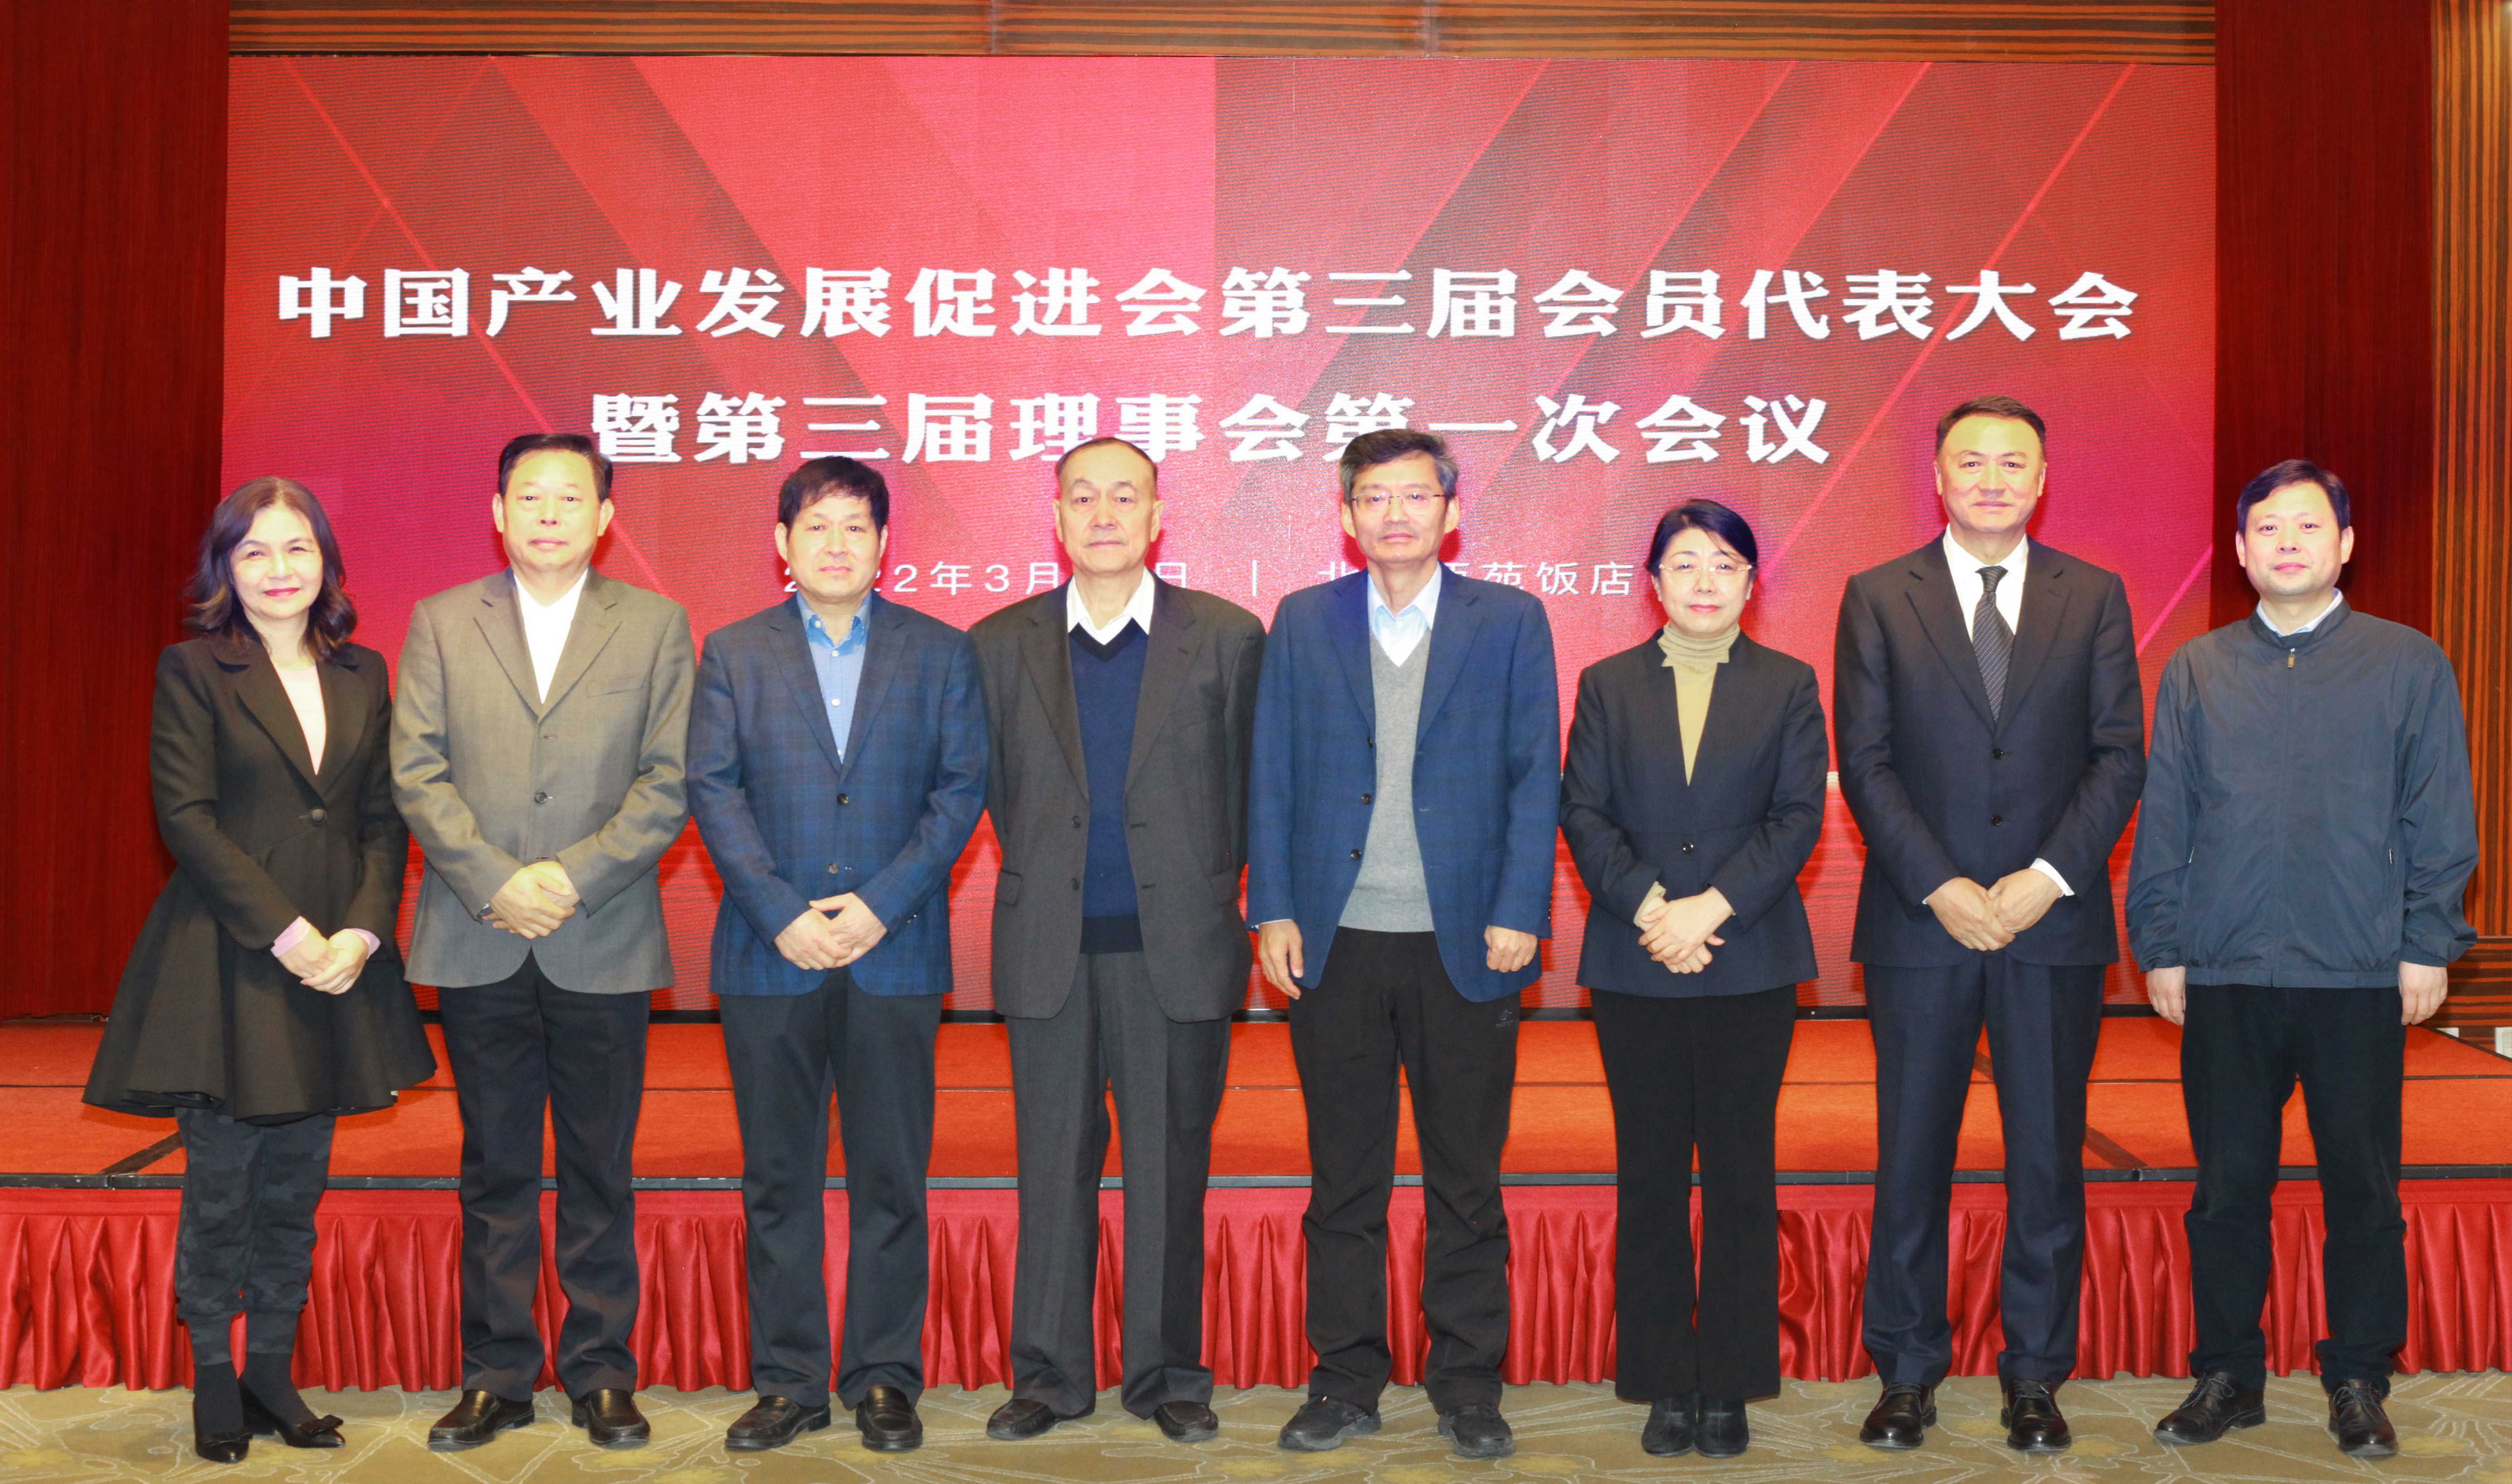 中国产业发展促进会第三届会员代表大会暨第三届理事会第一次会议召开